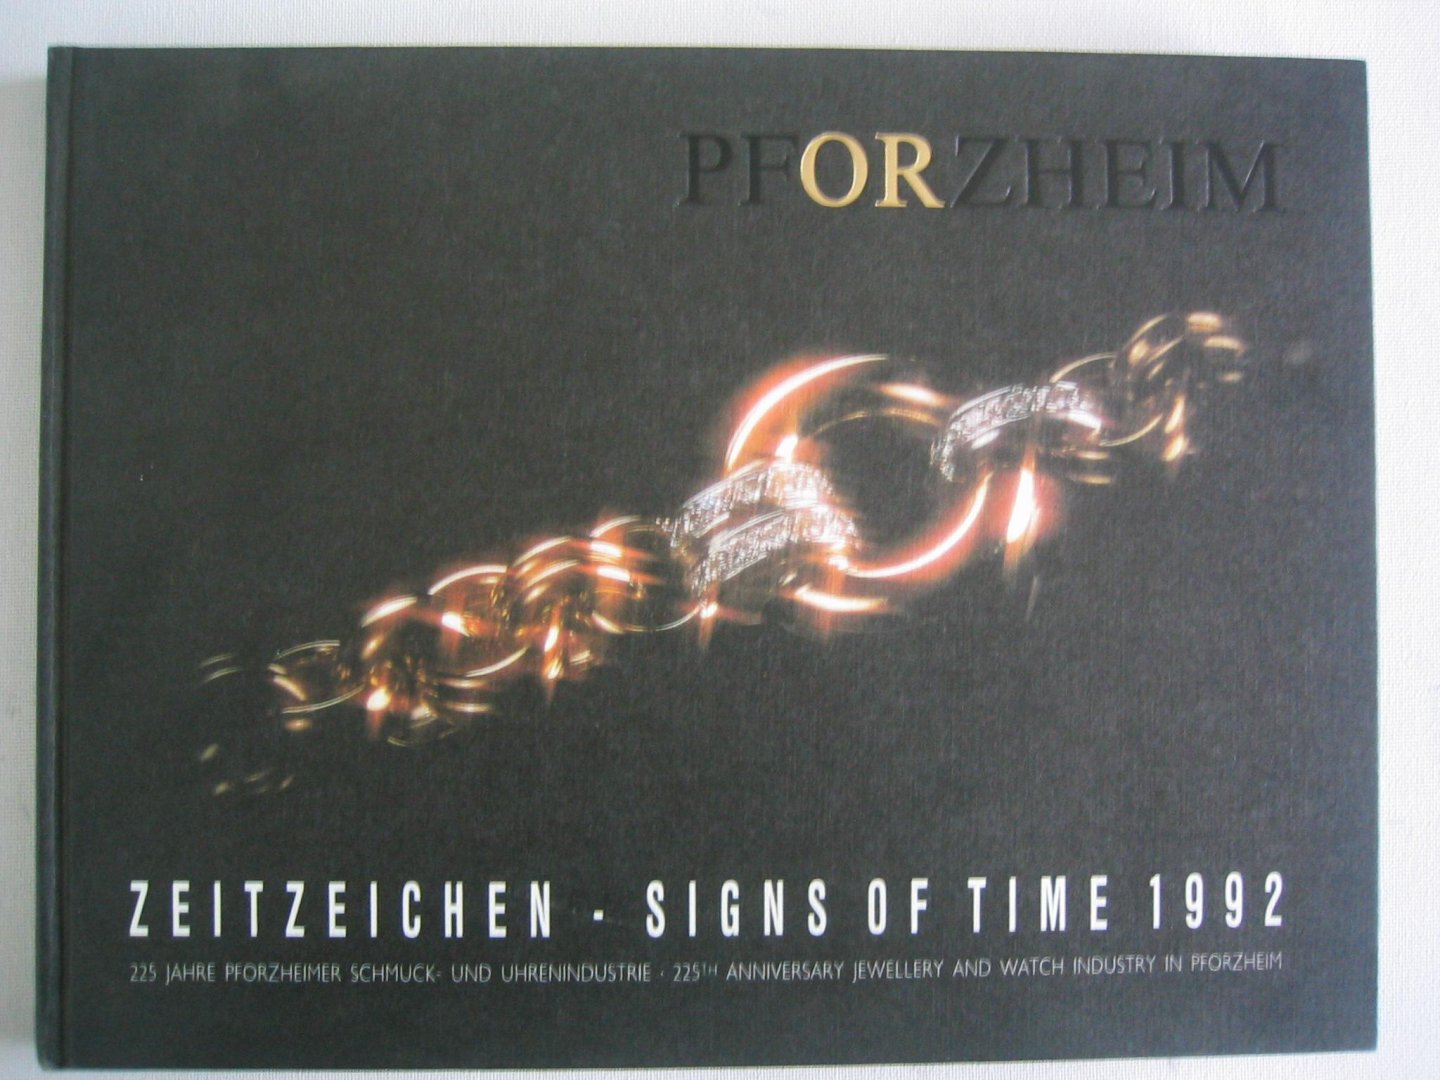 Diesner, Charly - Pforzheim - Zeitzeichen / Signs of Time 1992